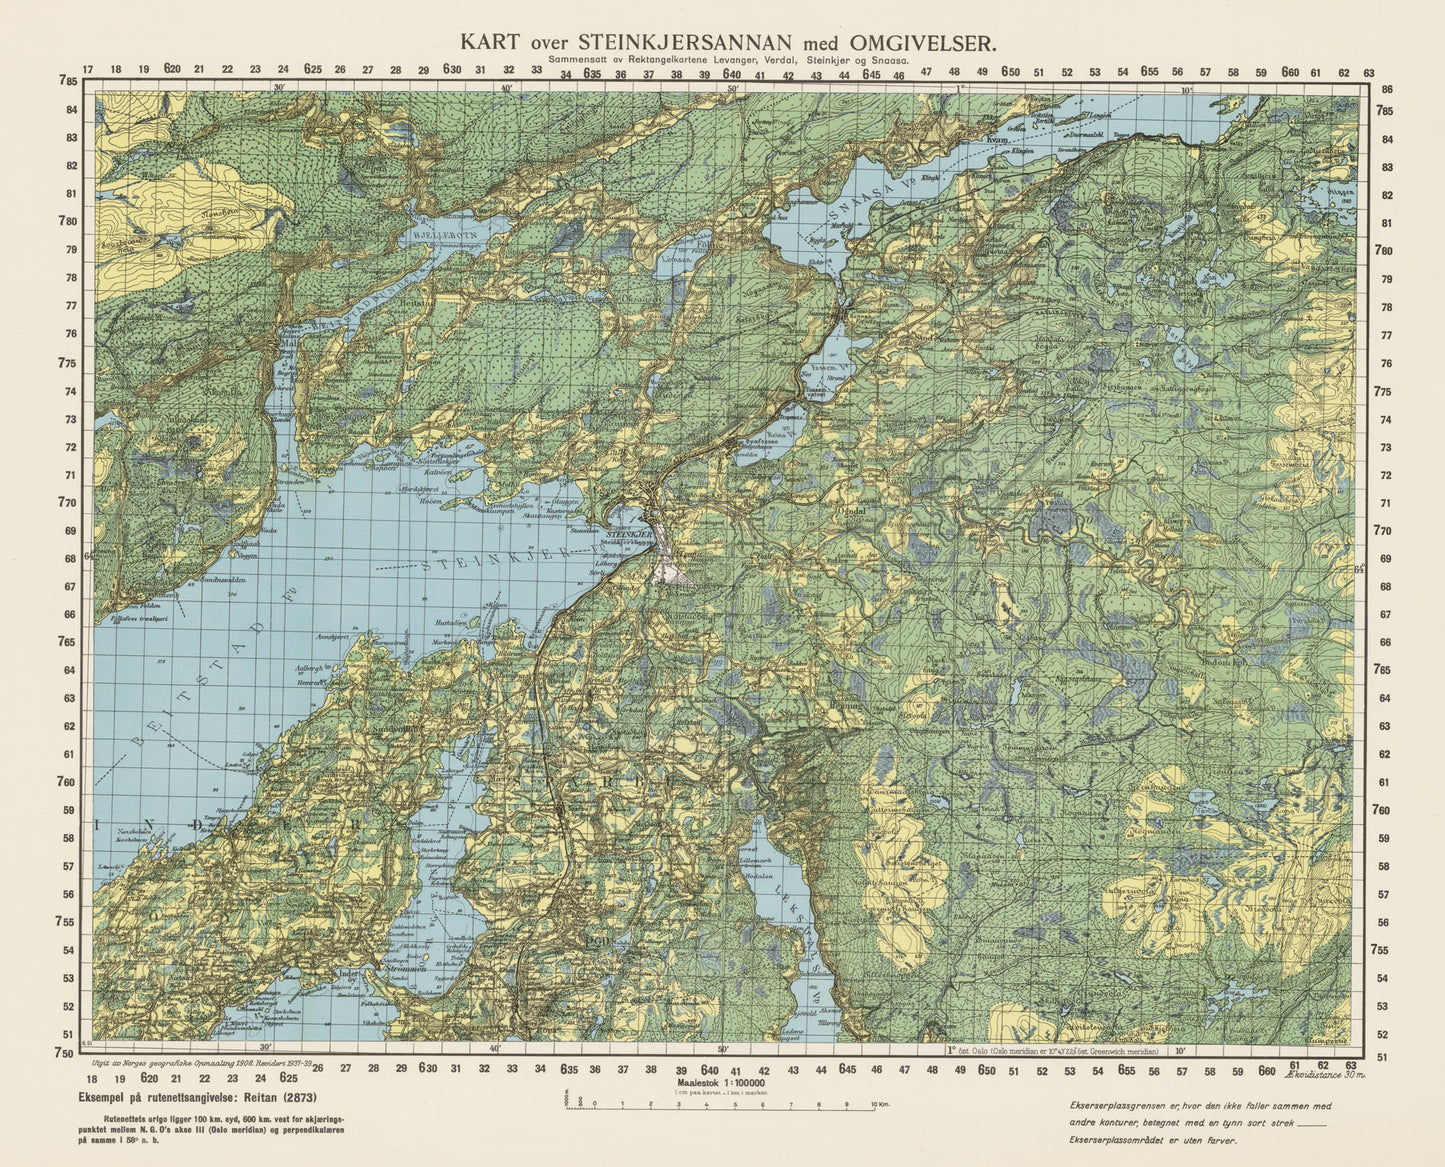 Ekserserplasskart; Kart over Steinkjersannan med omgivelser: Nord-Trøndelag